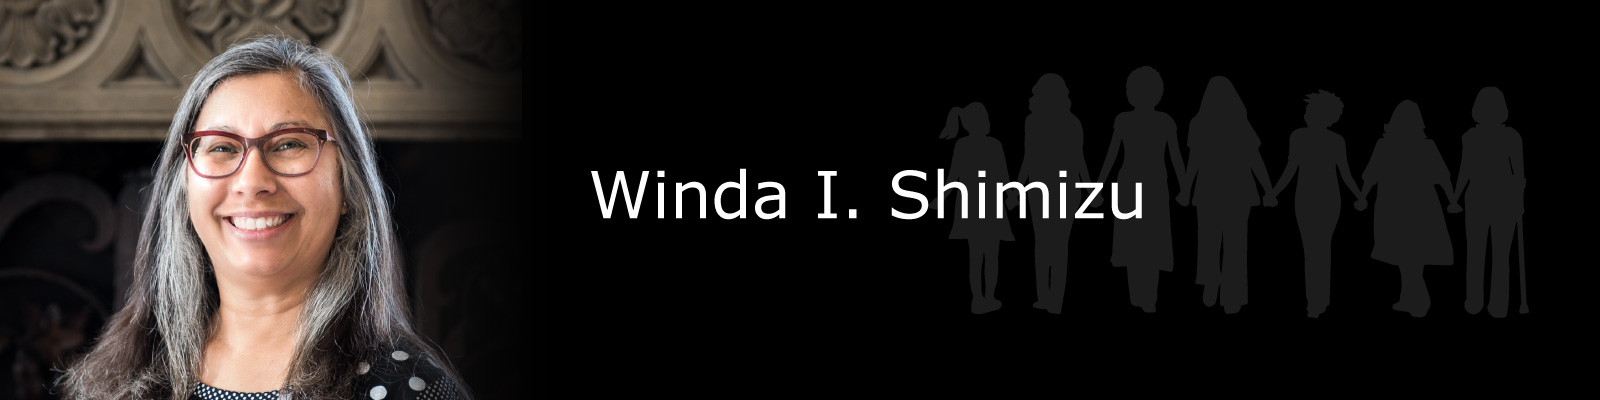 Photo of Winda I. Shimizu.